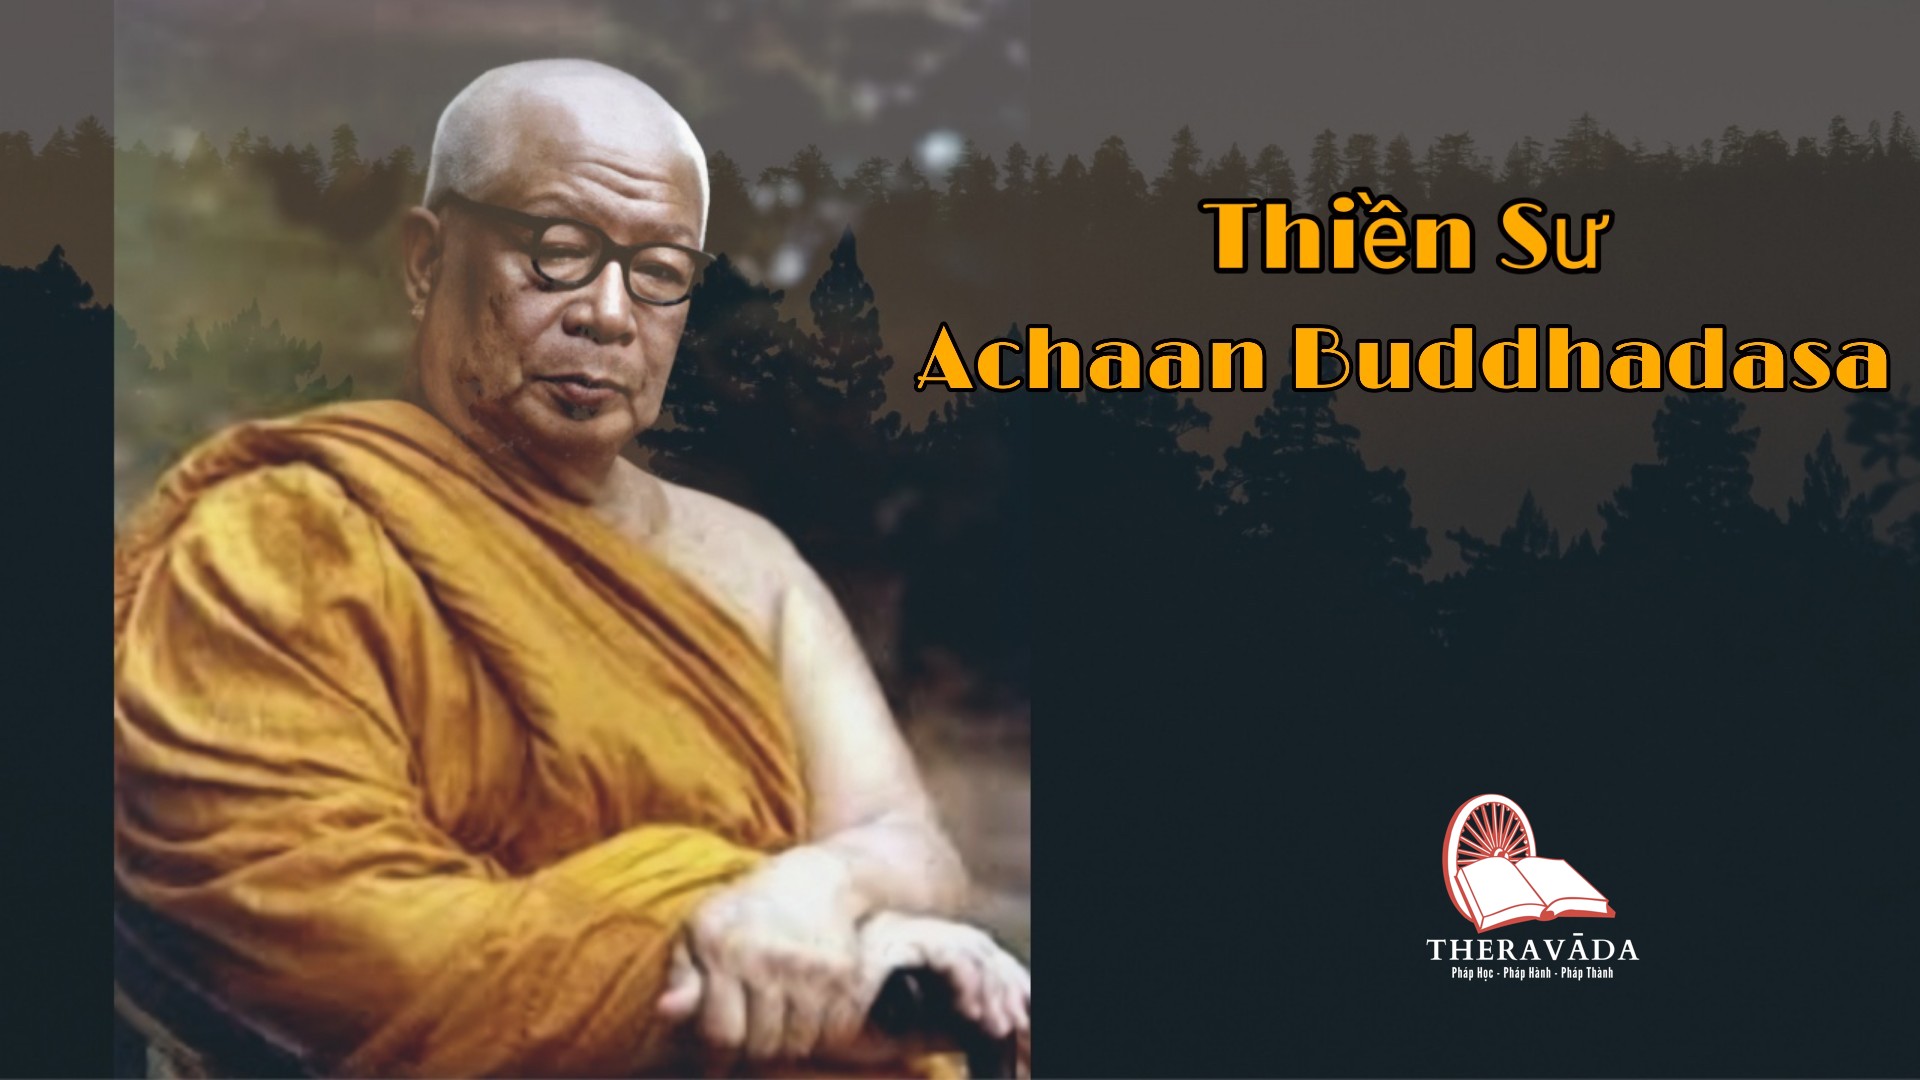 Thiền sư Achaan Buddhadasa 2